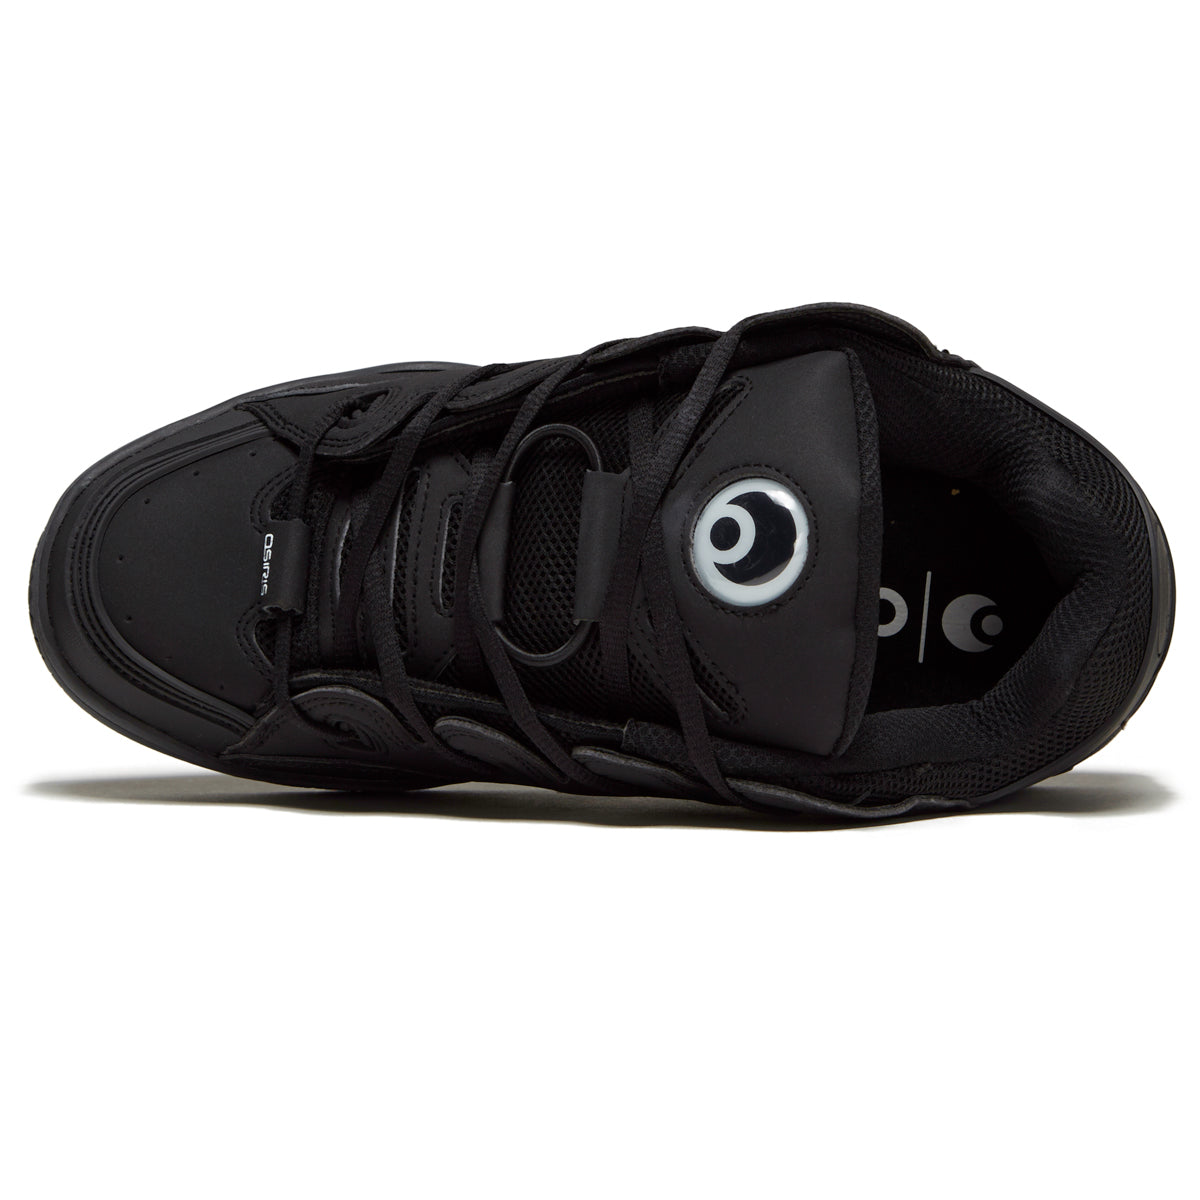 Osiris D3 Og Shoes - Black/Black/Black image 3